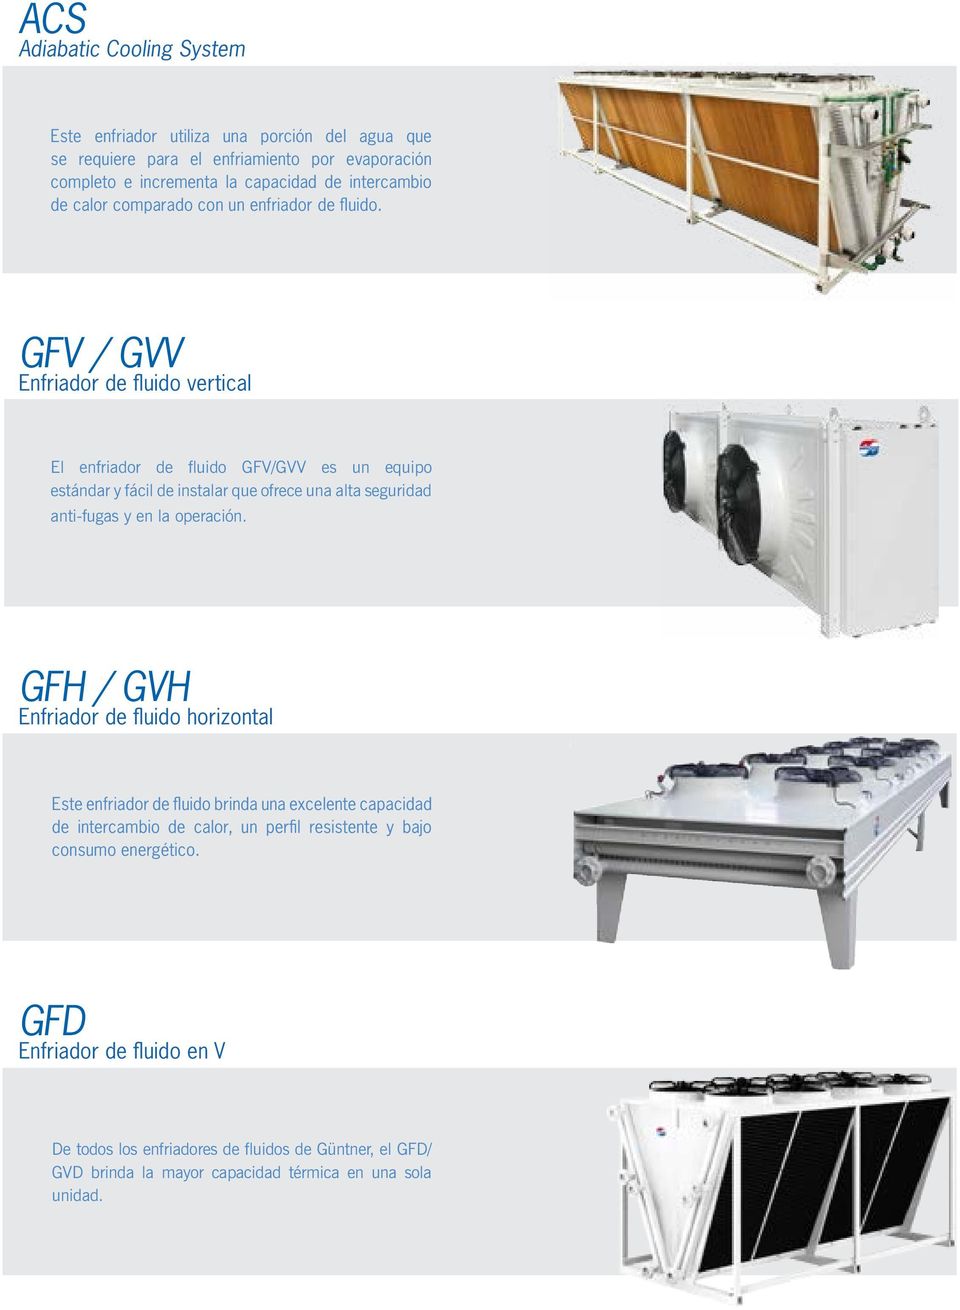 GFV / GVV Enfriador de fluido vertical El enfriador de fluido GFV/GVV es un equipo estándar y fácil de instalar que ofrece una alta seguridad anti-fugas y en la operación.